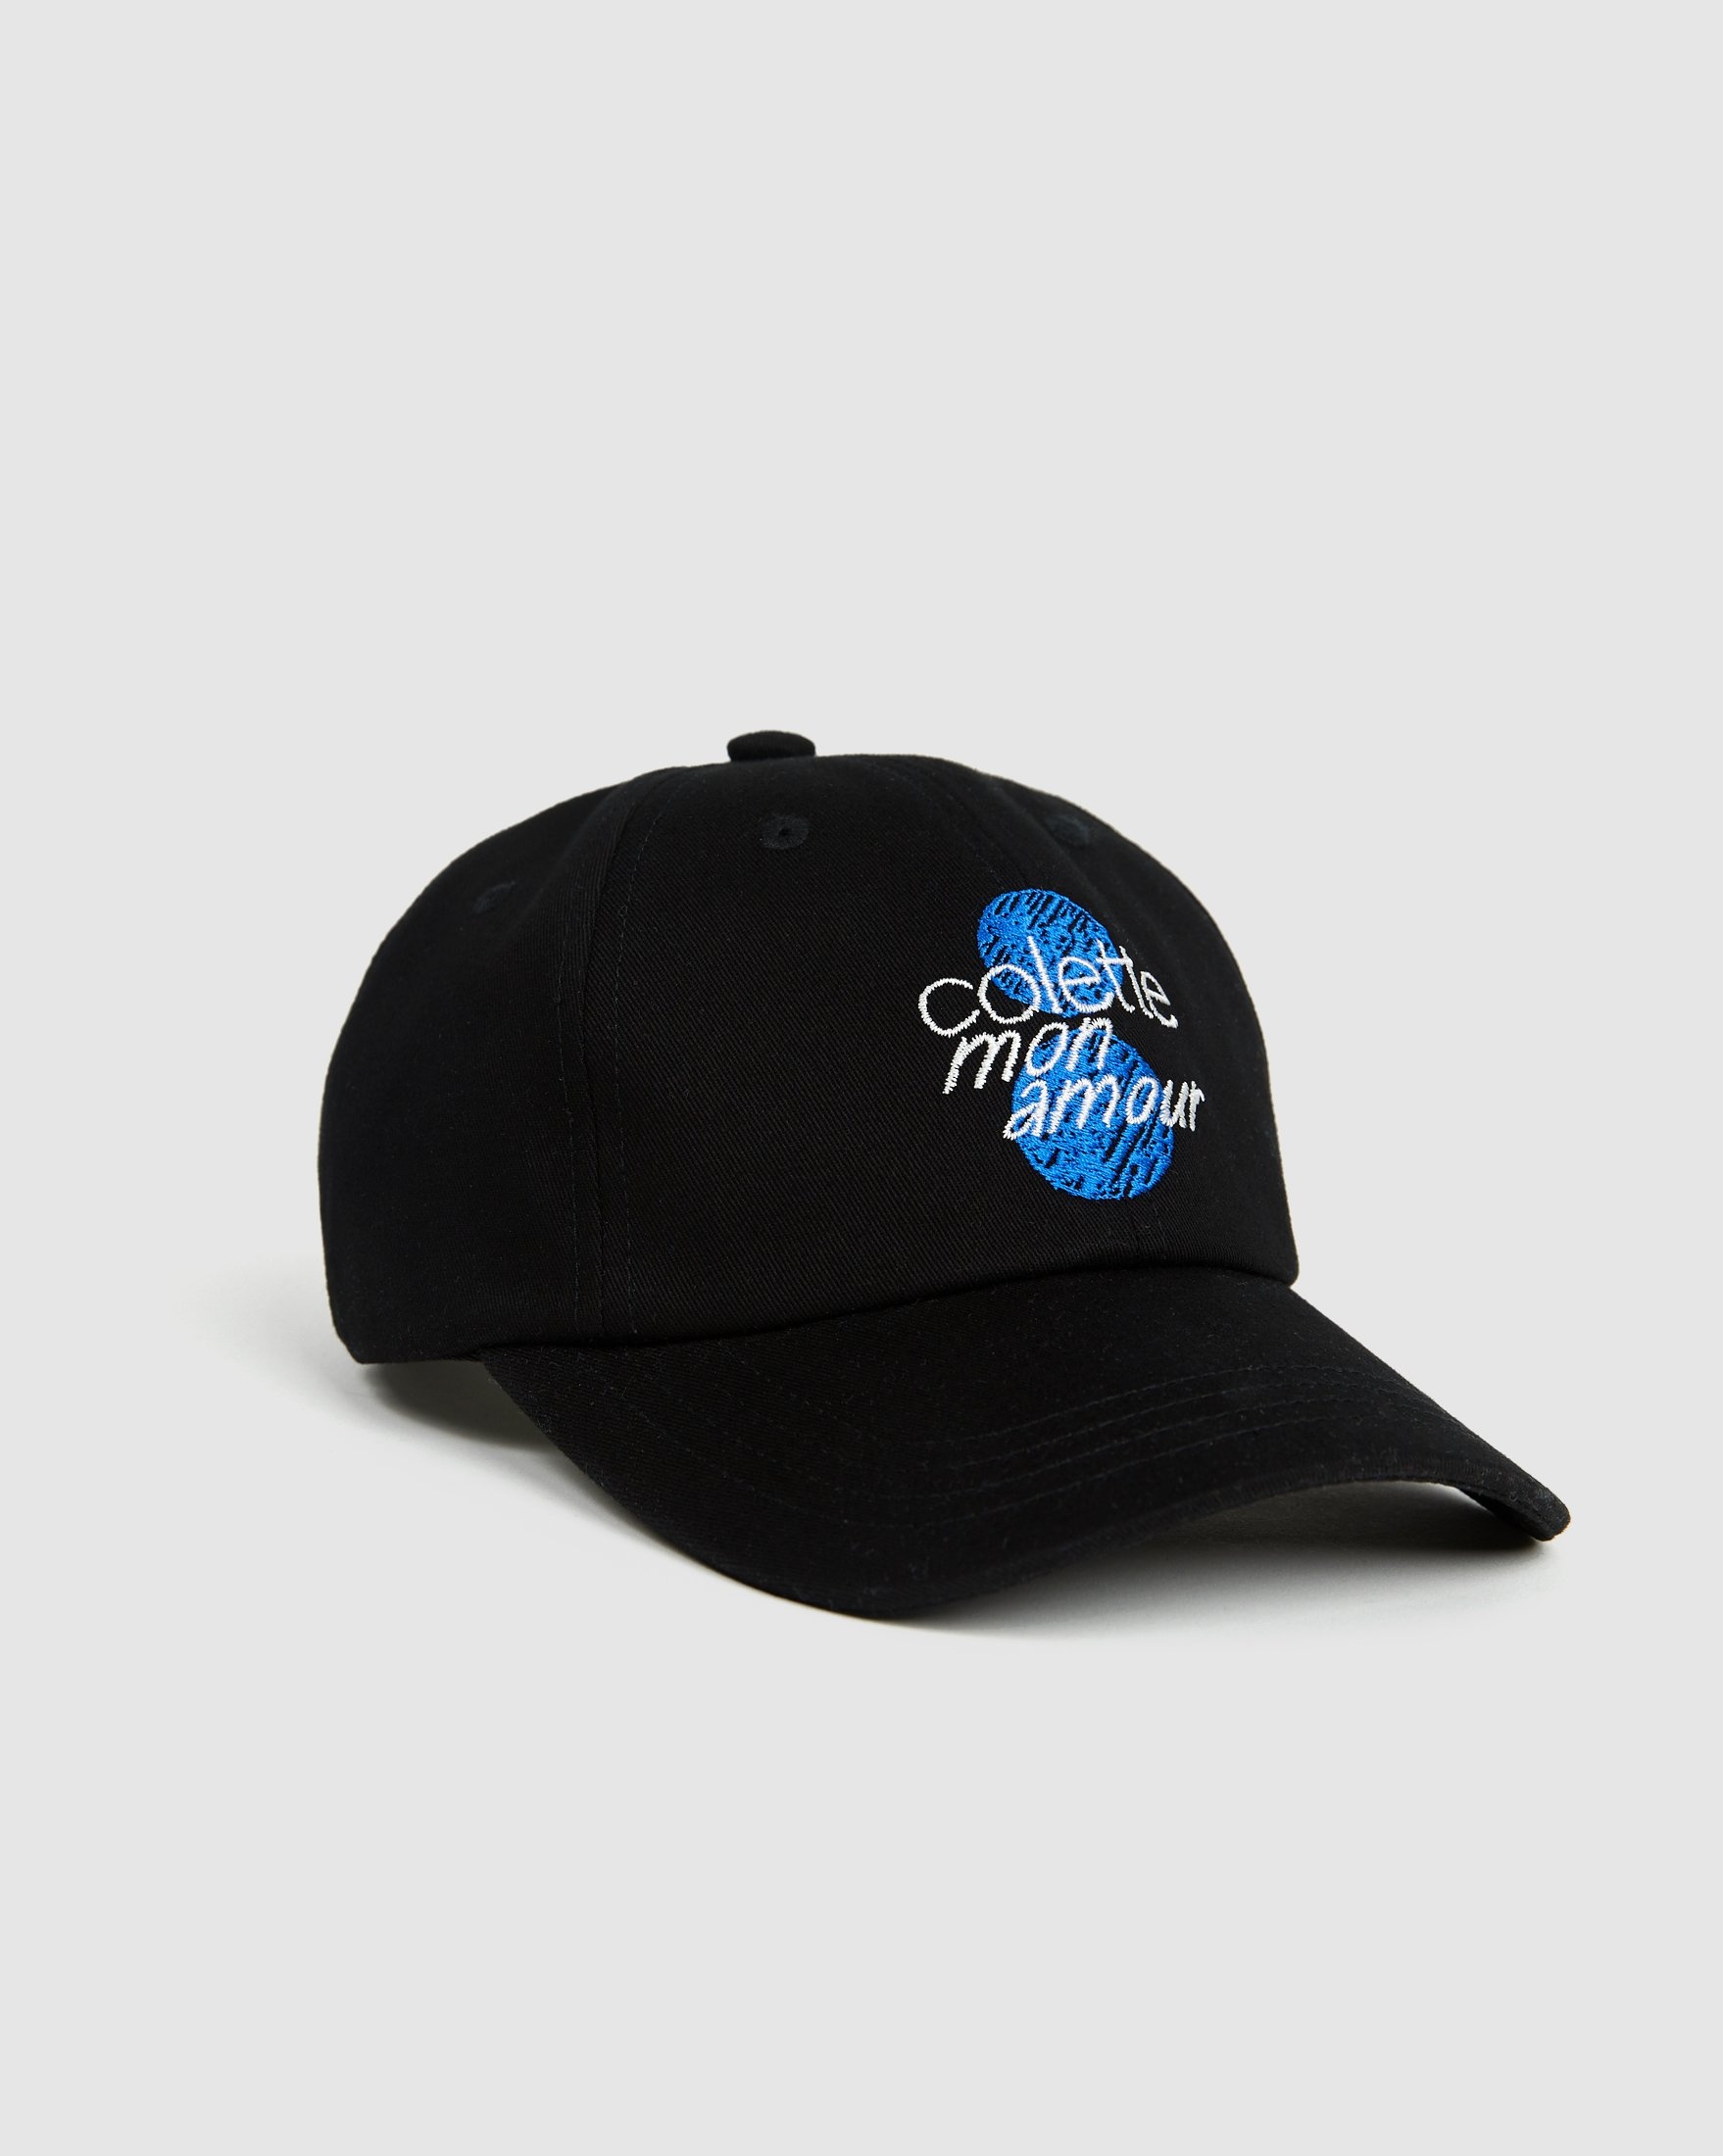 Colette Mon Amour – Dots Baseball Cap Black - Hats - Black - Image 1